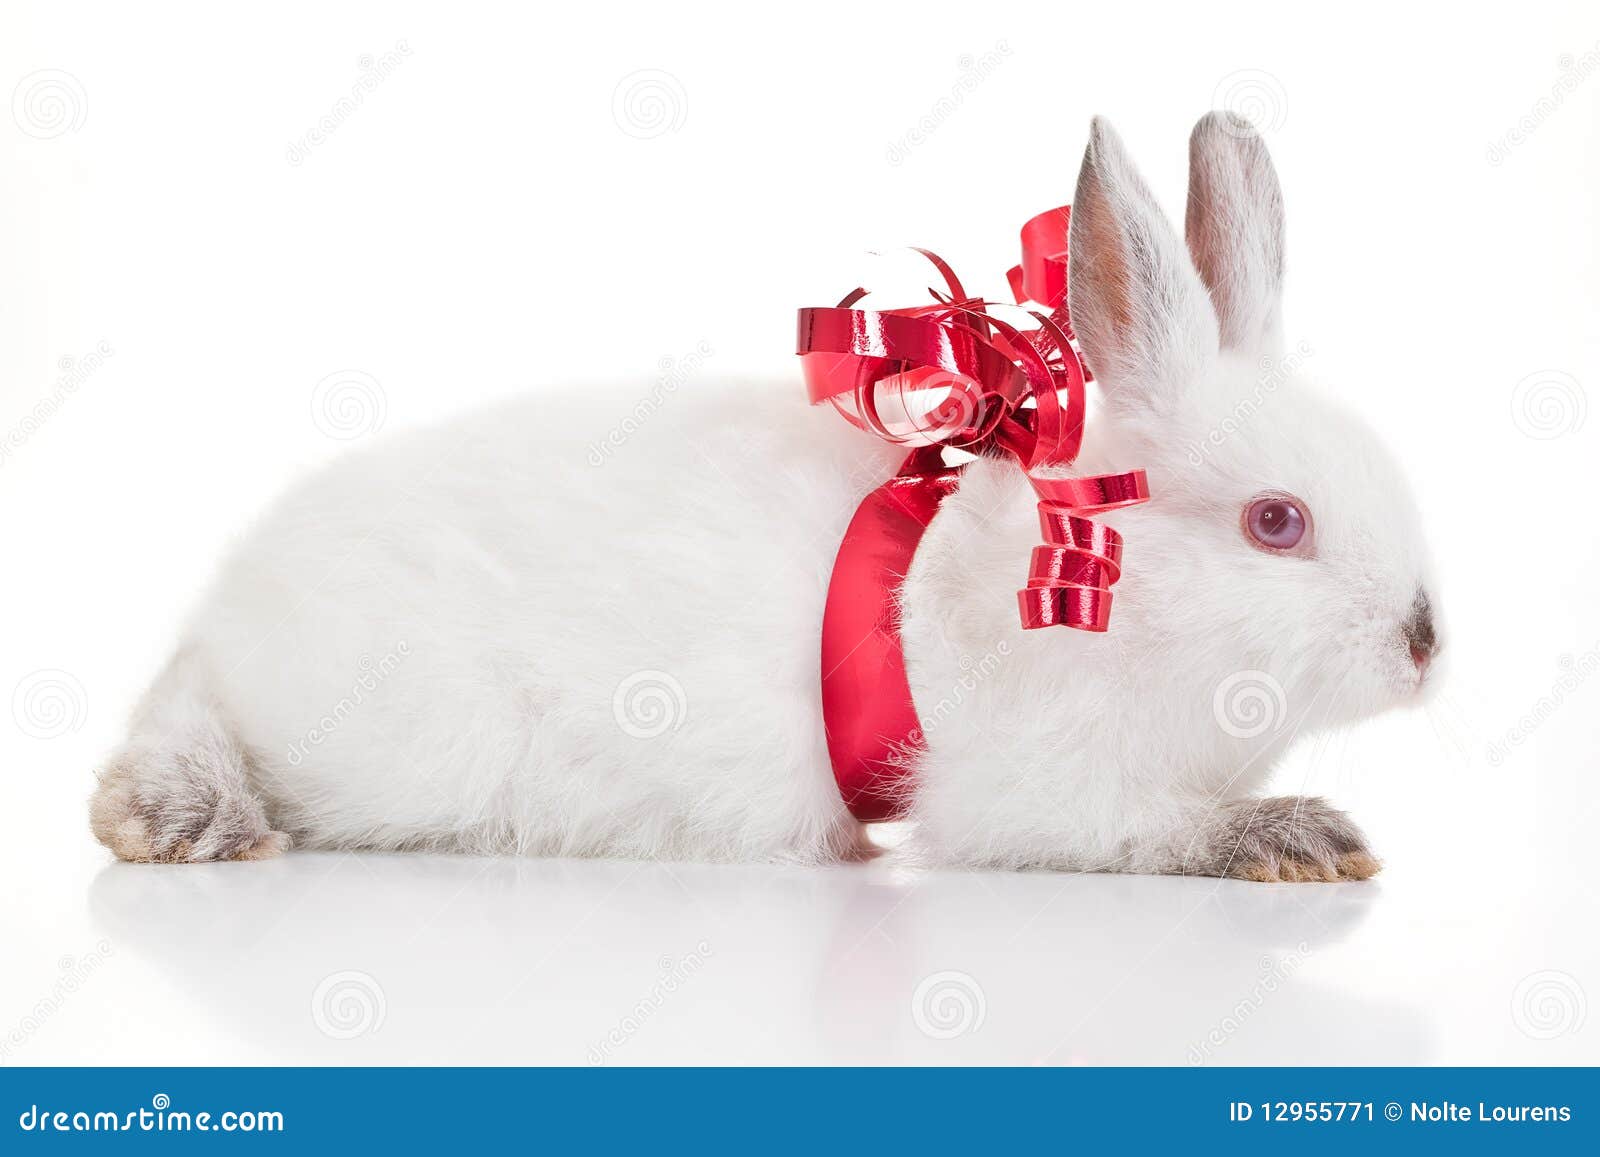 Regalo del conejo imagen de archivo. Imagen de vacaciones - 12955771